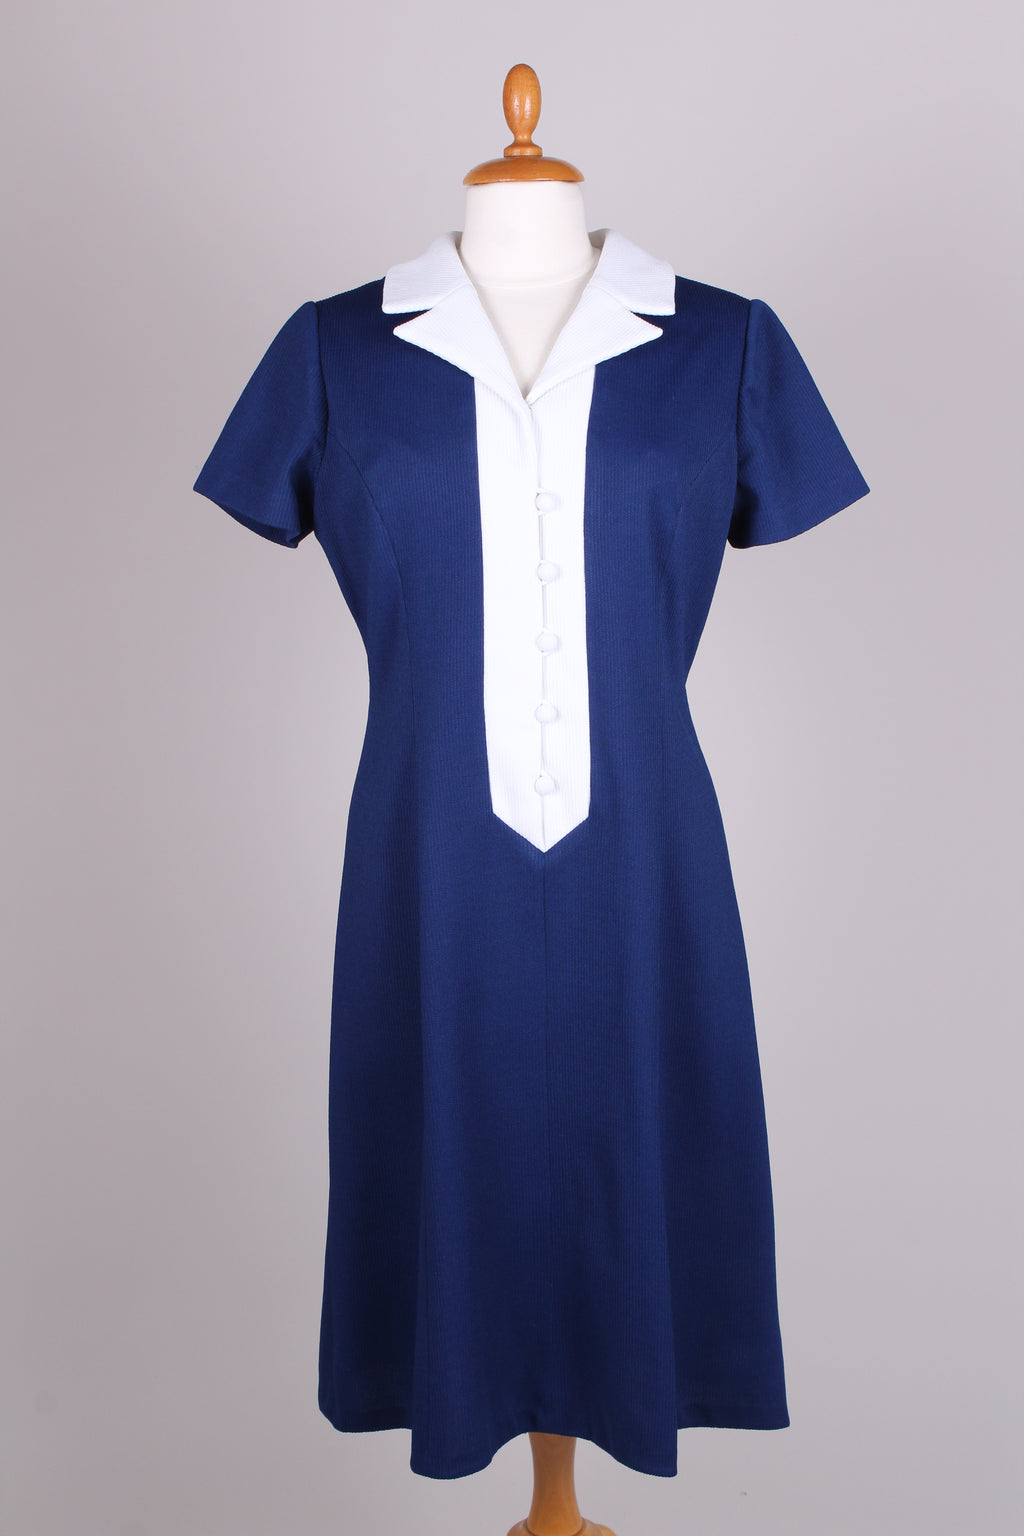 Perth Blackborough anker skotsk Vintage kjoler og tøj fra 1960'erne. Find din næste 60 er kjole her –  Vintage Divine